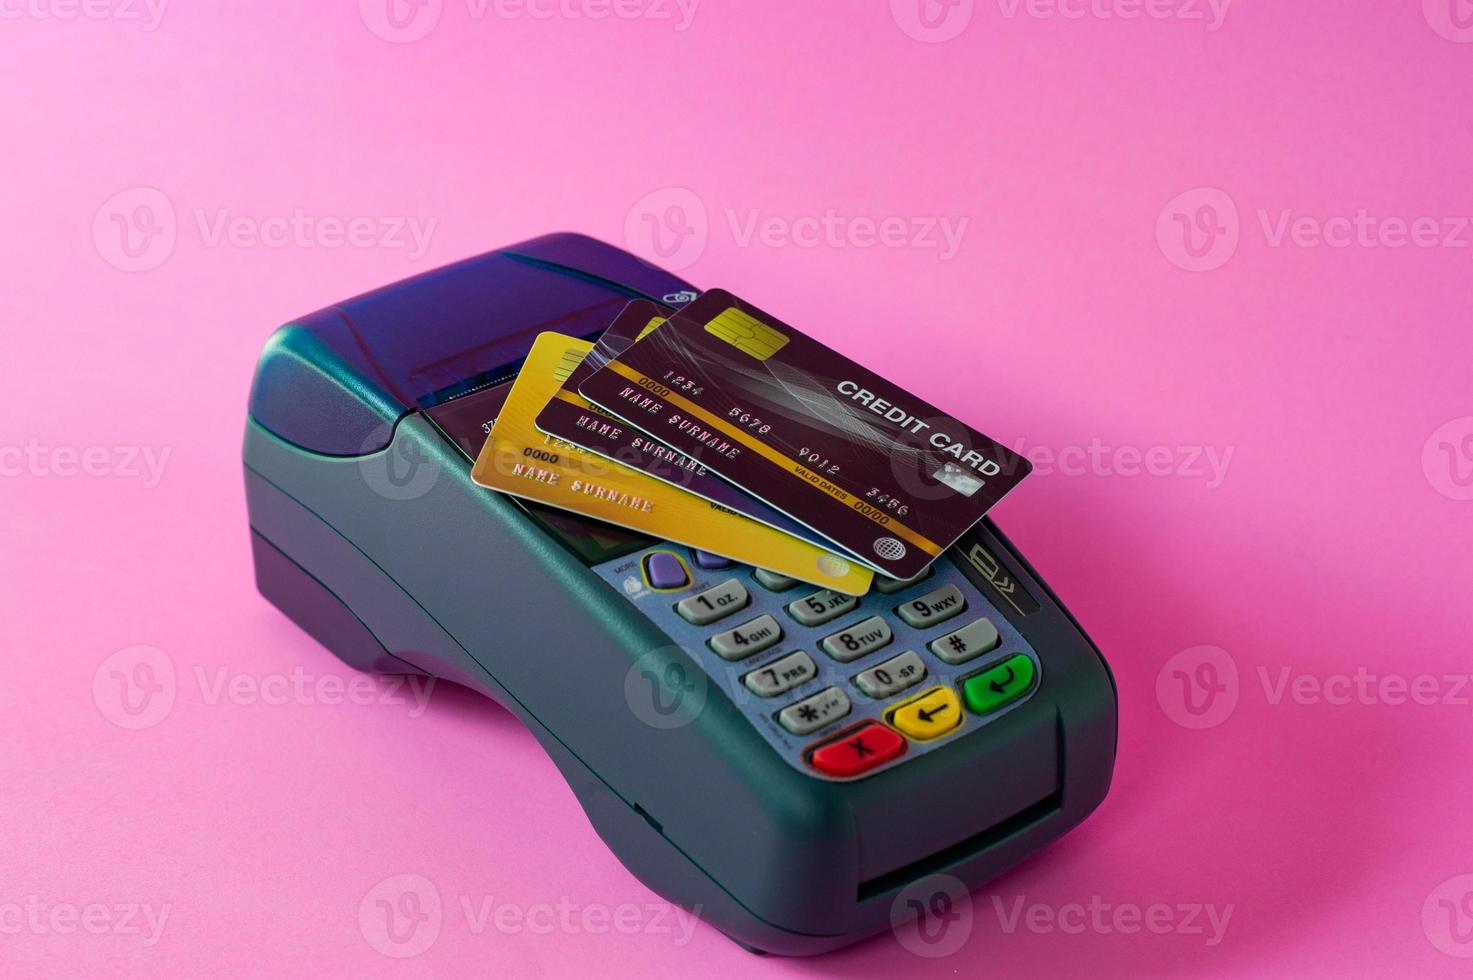 tarjeta de crédito y escáner de tarjetas de crédito en un fondo rosa foto